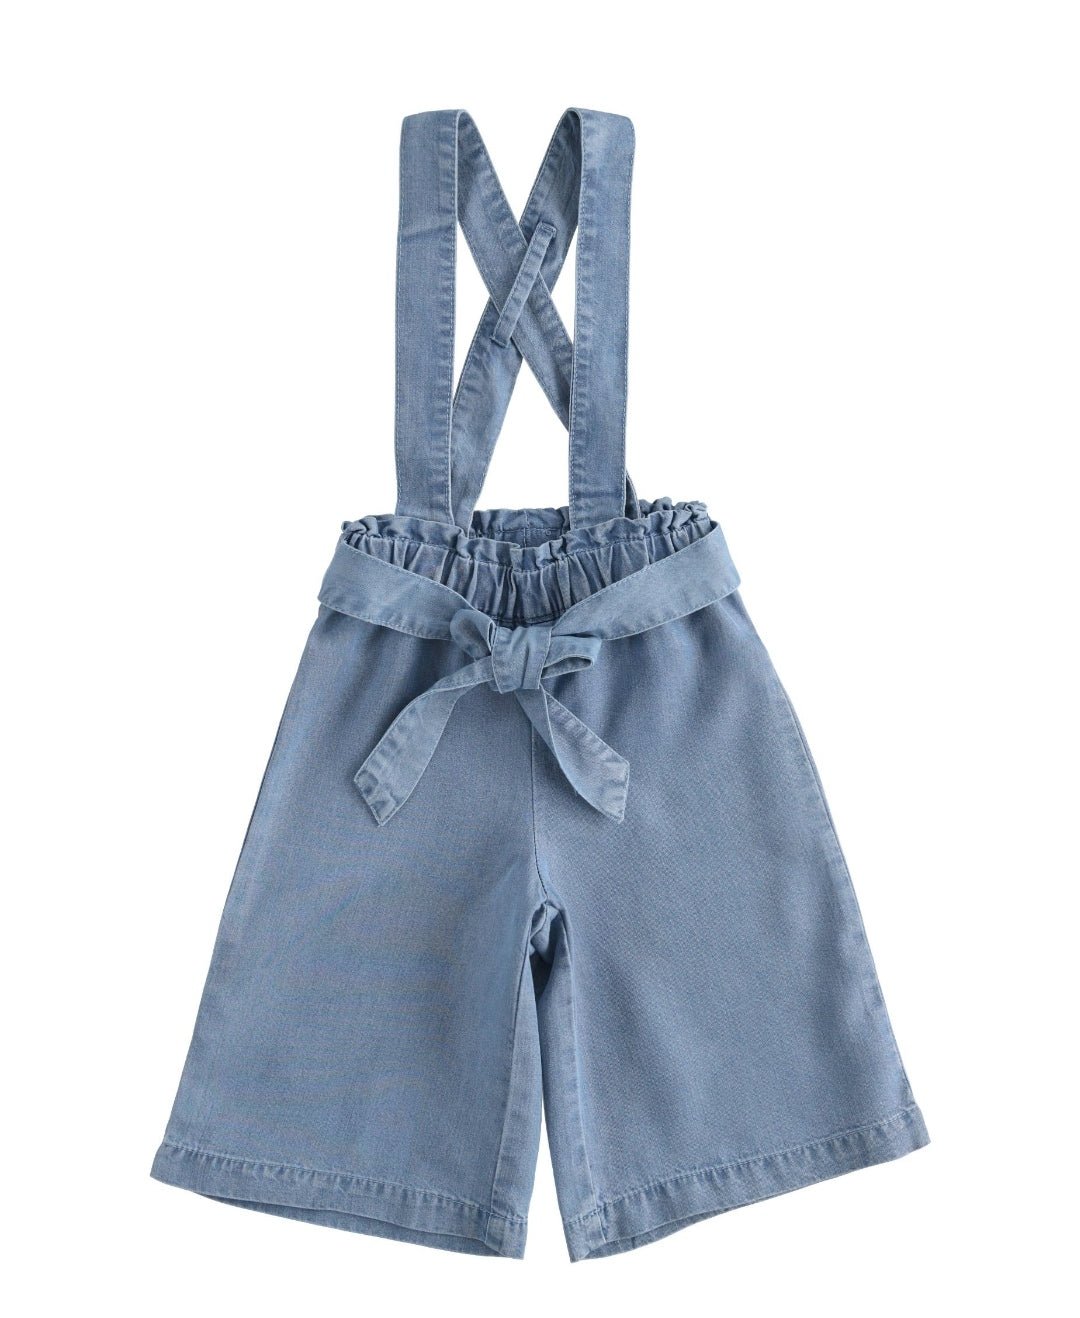 Jeans palazzo con bretelle - Coccole e Ricami |email: info@coccoleericami.shop| P.Iva 09642670583